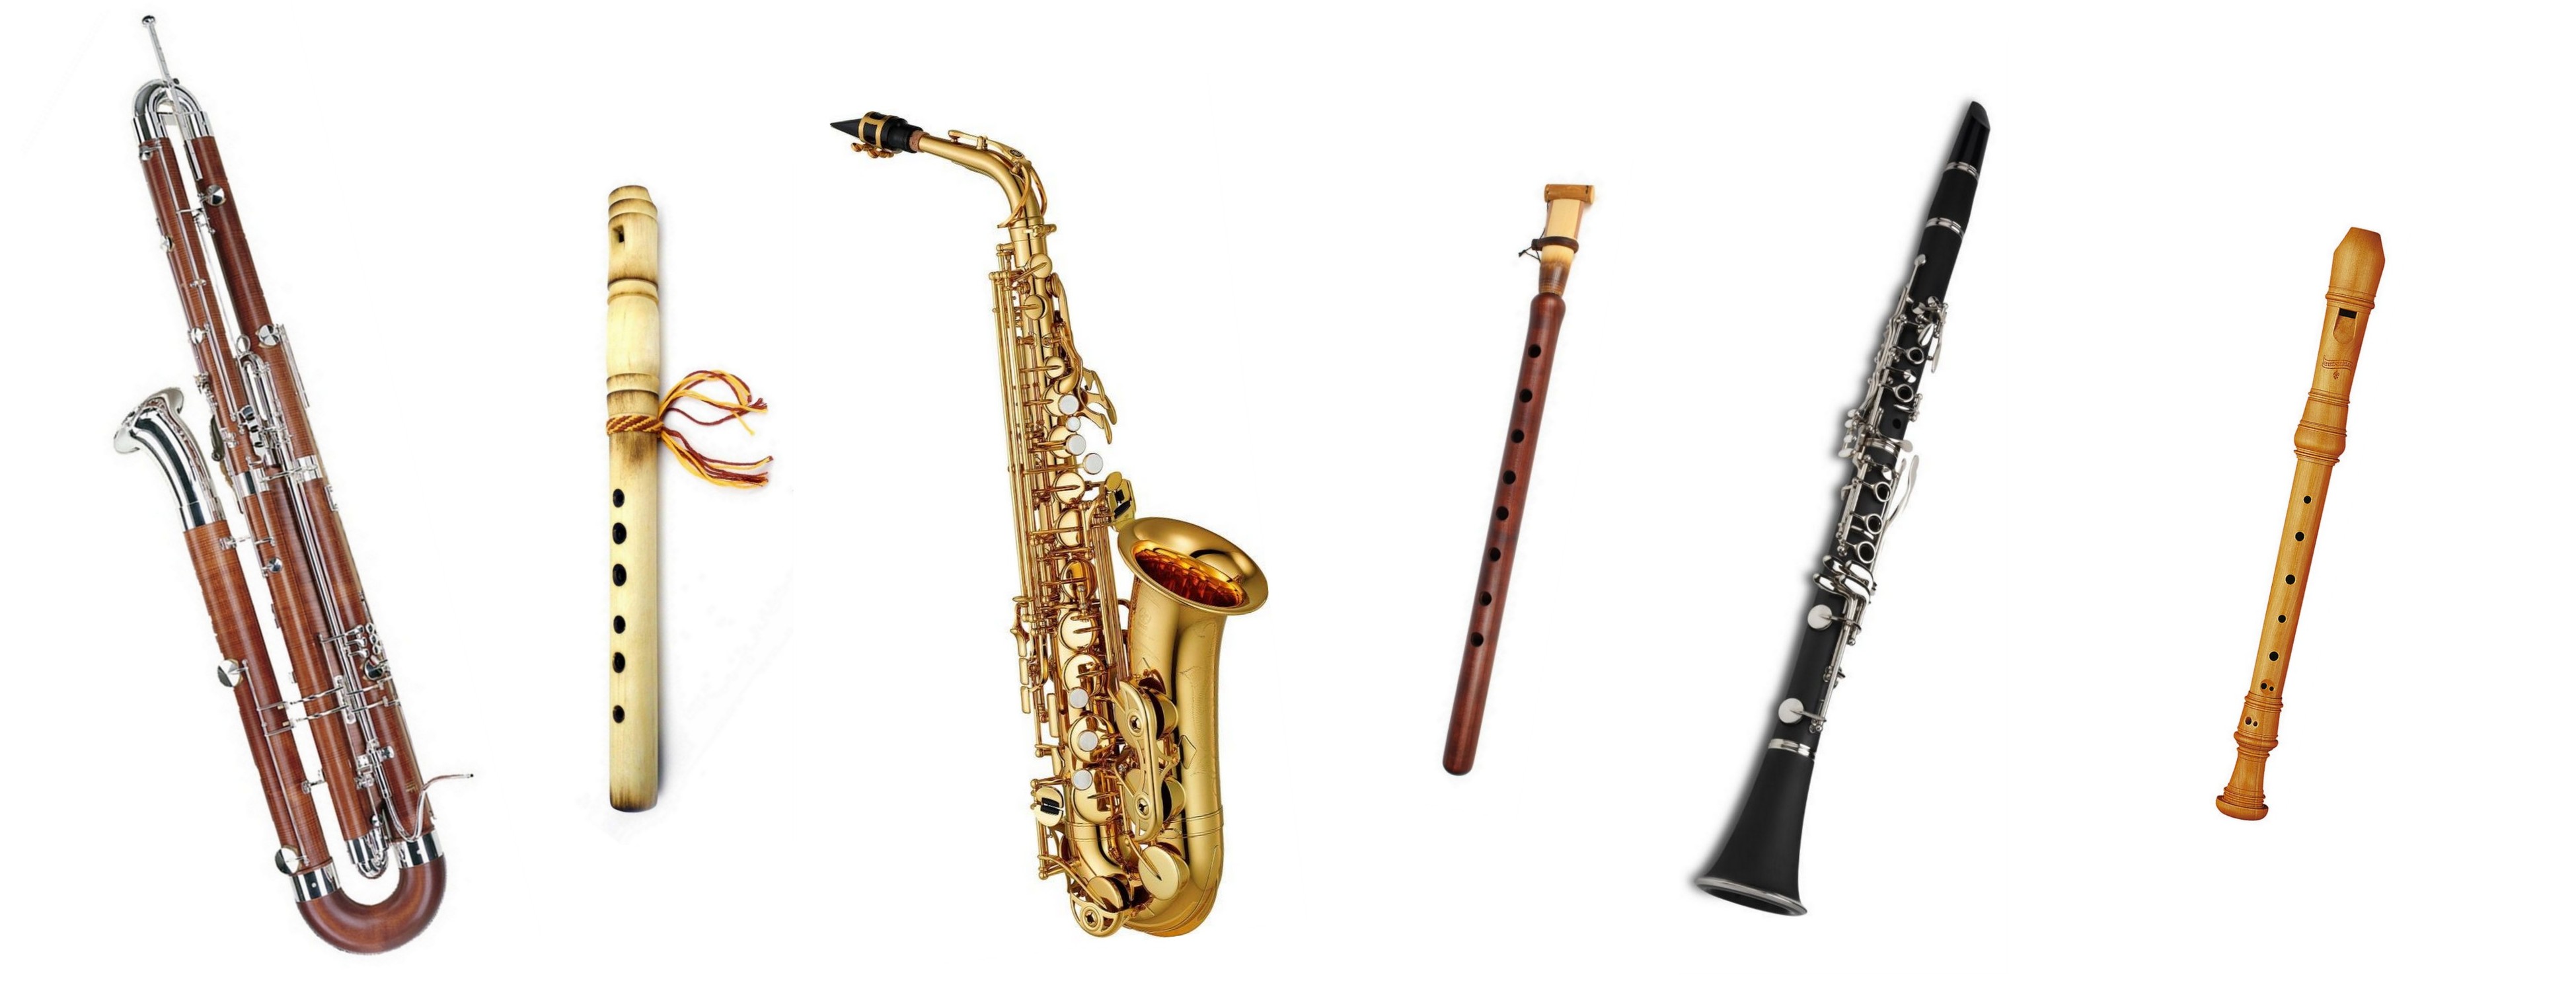 Гобой труба кларнет. Флейта гобой кларнет Фагот саксофон. Фагот духовой музыкальный инструмент. Валторна гобой кларнет Фагот флейта. Труба флейта саксофон кларнет тромбон.